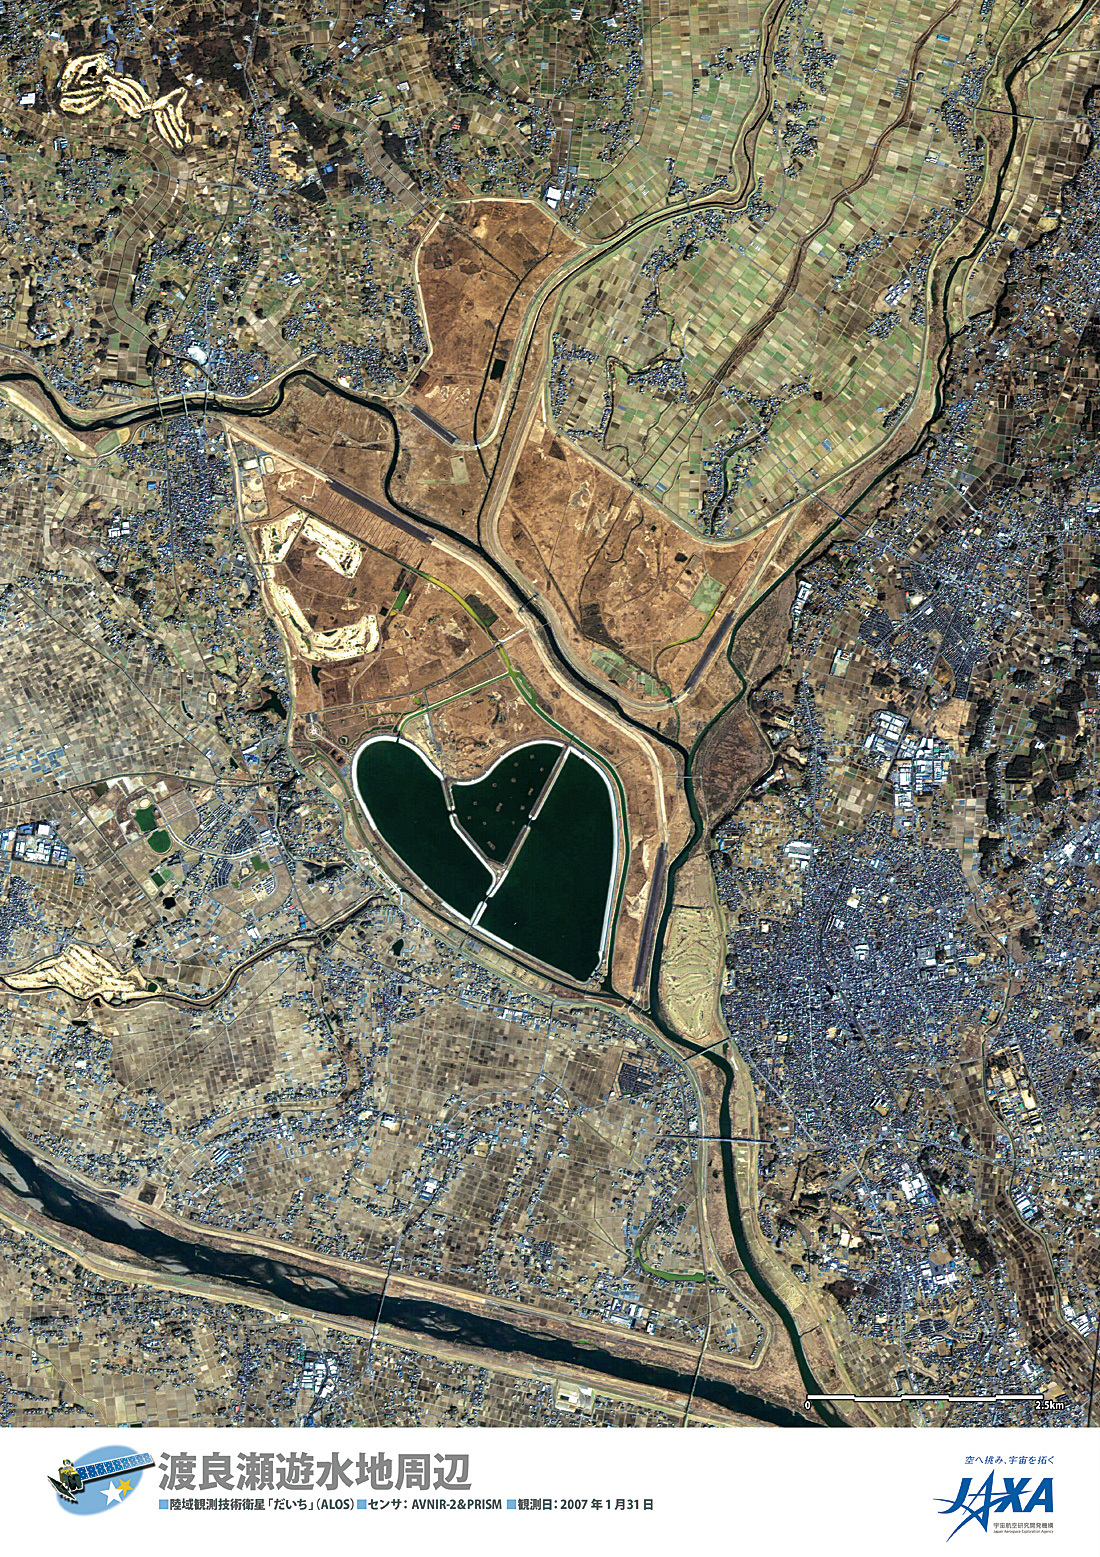 だいちから見た日本の都市 渡良瀬遊水地周辺:衛星画像（ポスター仕上げ）